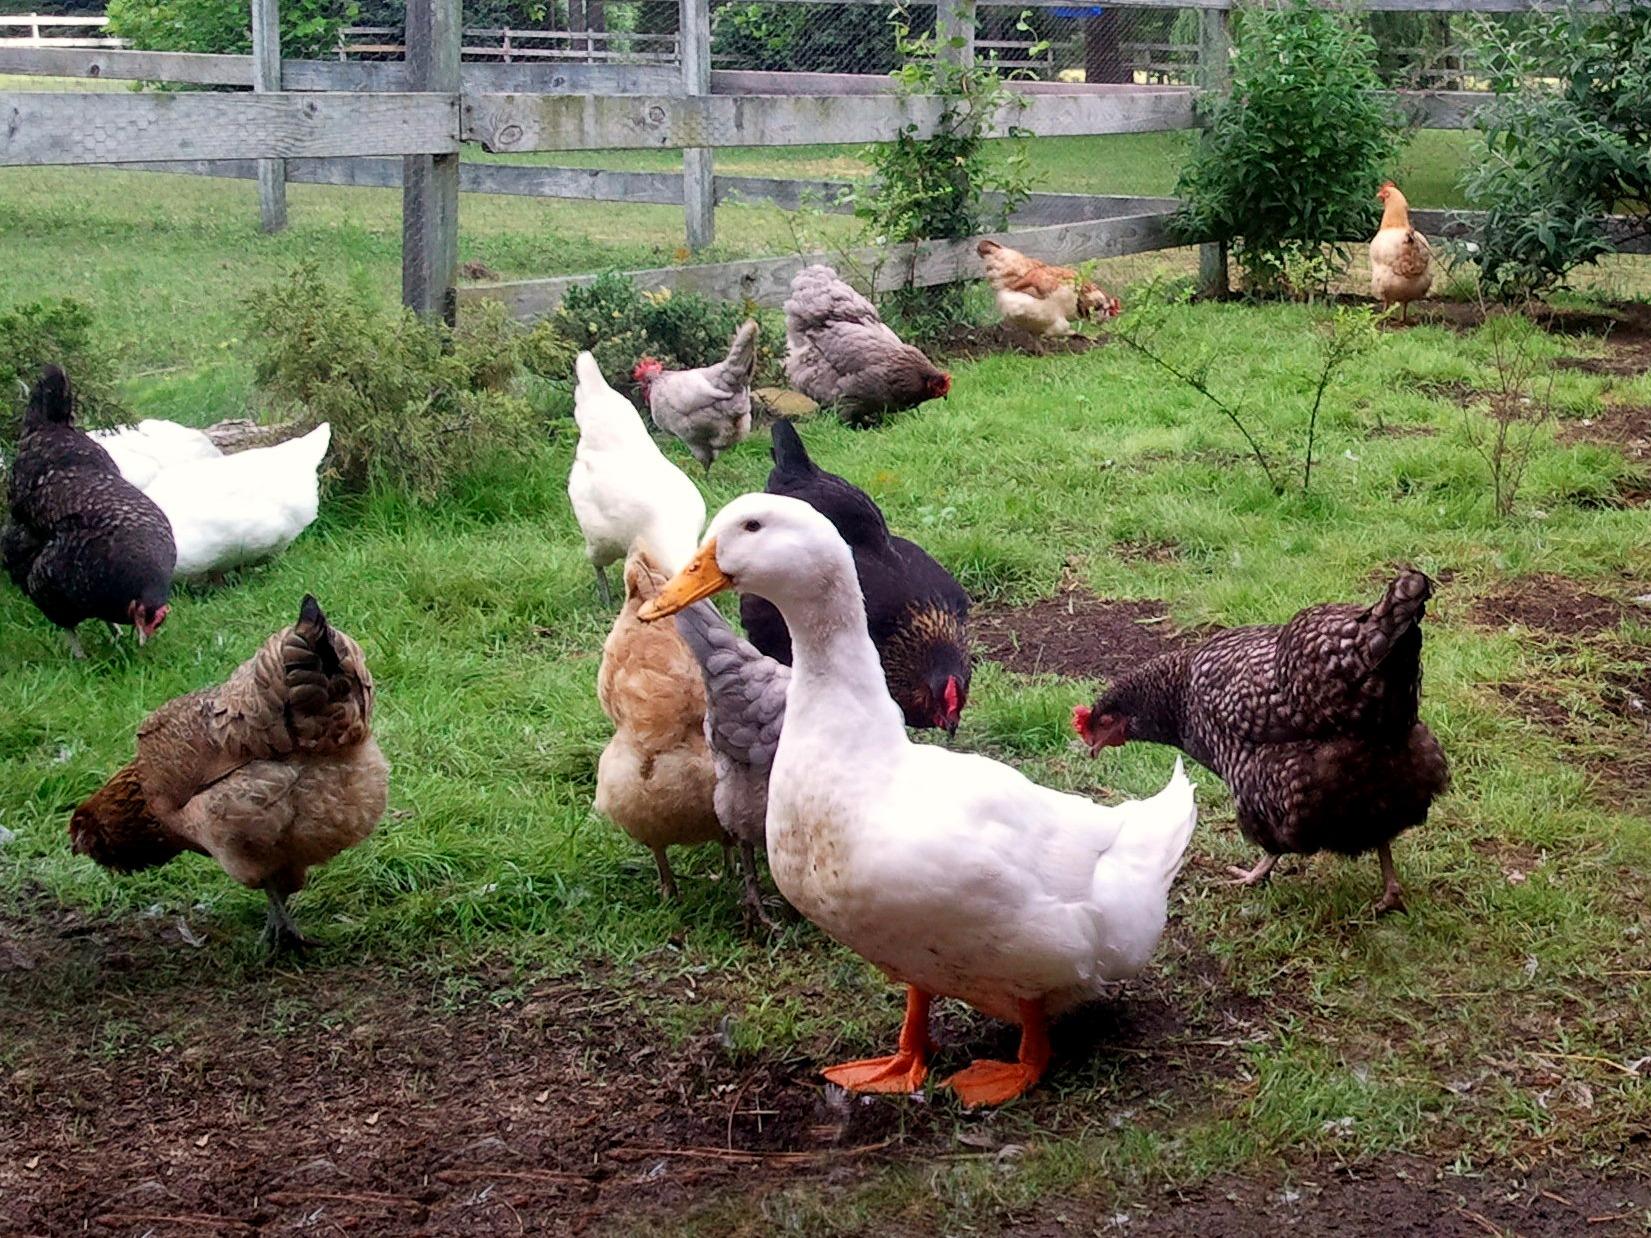 ducks-chickens